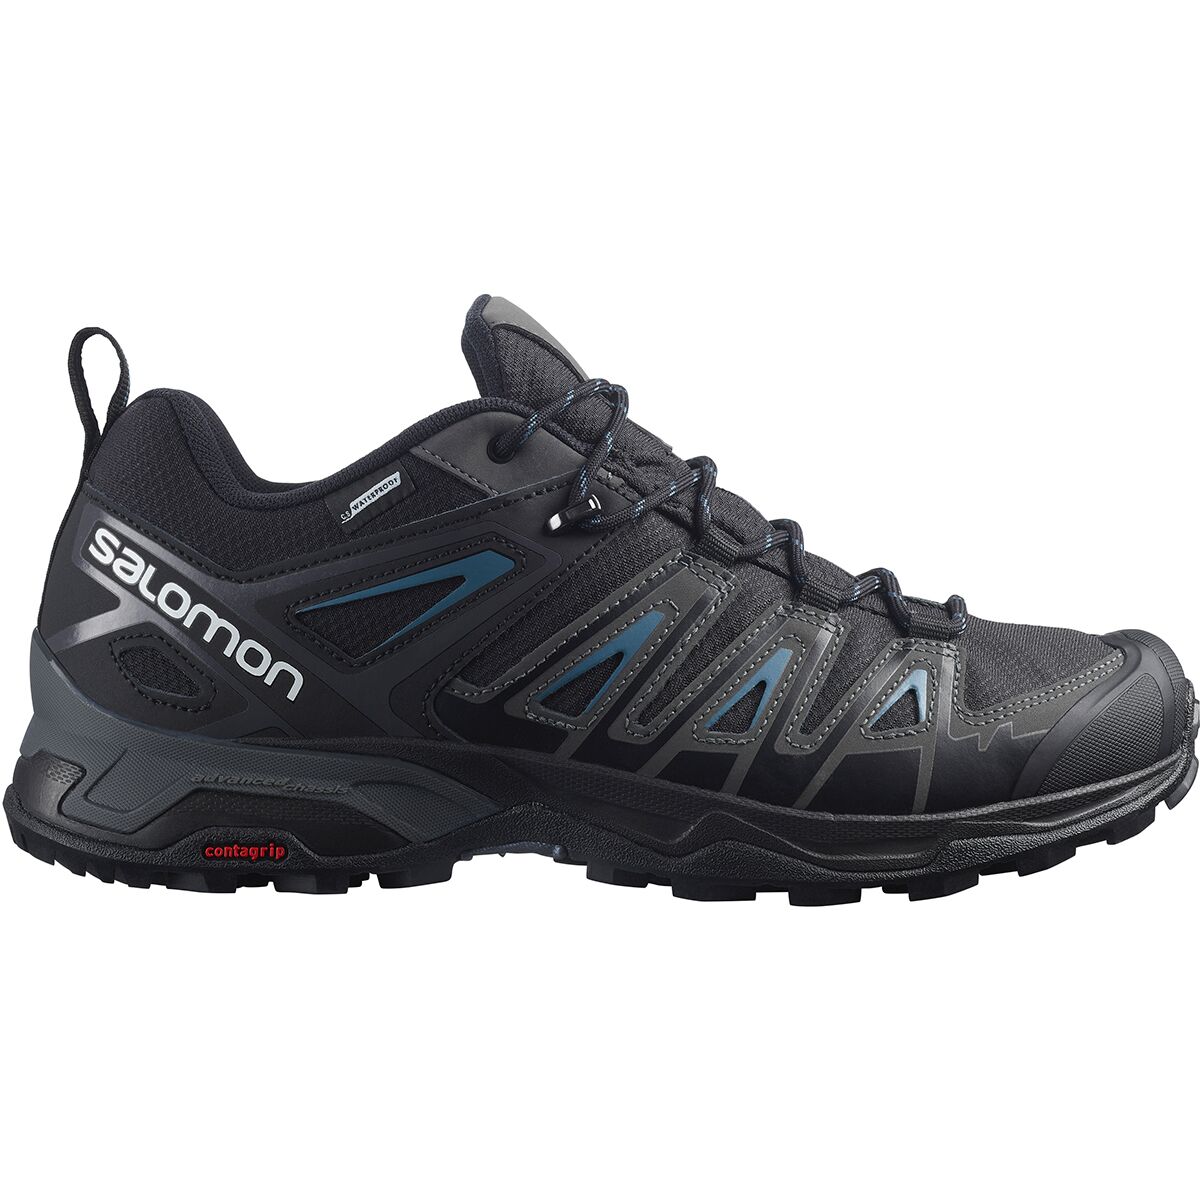 Salomon X Ultra Pioneer CSWP Hiking Shoe - Men's